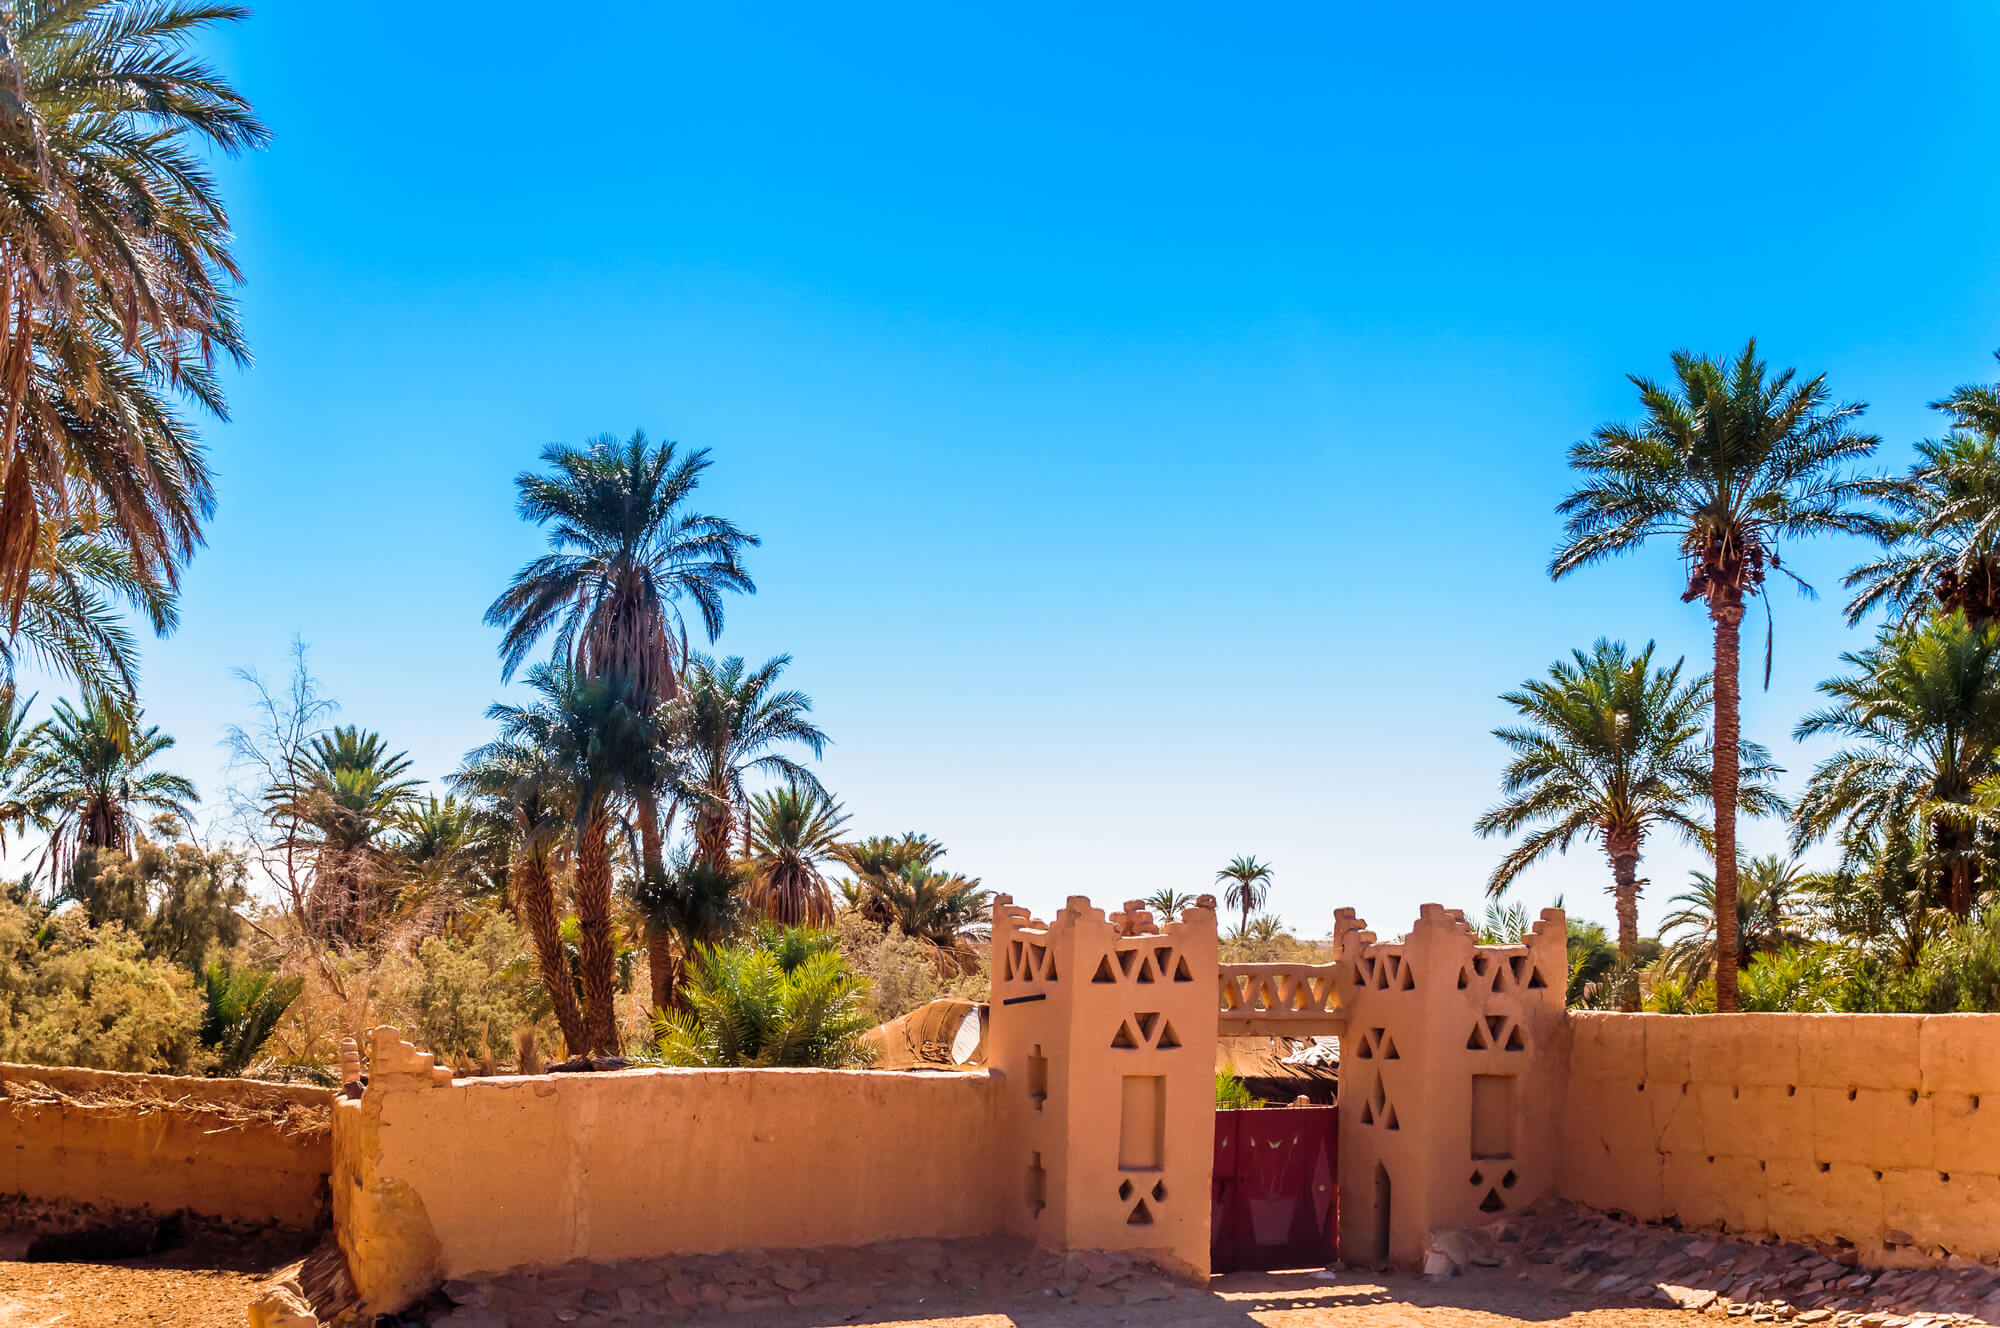 المغرب: واحة في الصحراء الكبرى. الصورة: موقع Depositphotos.com